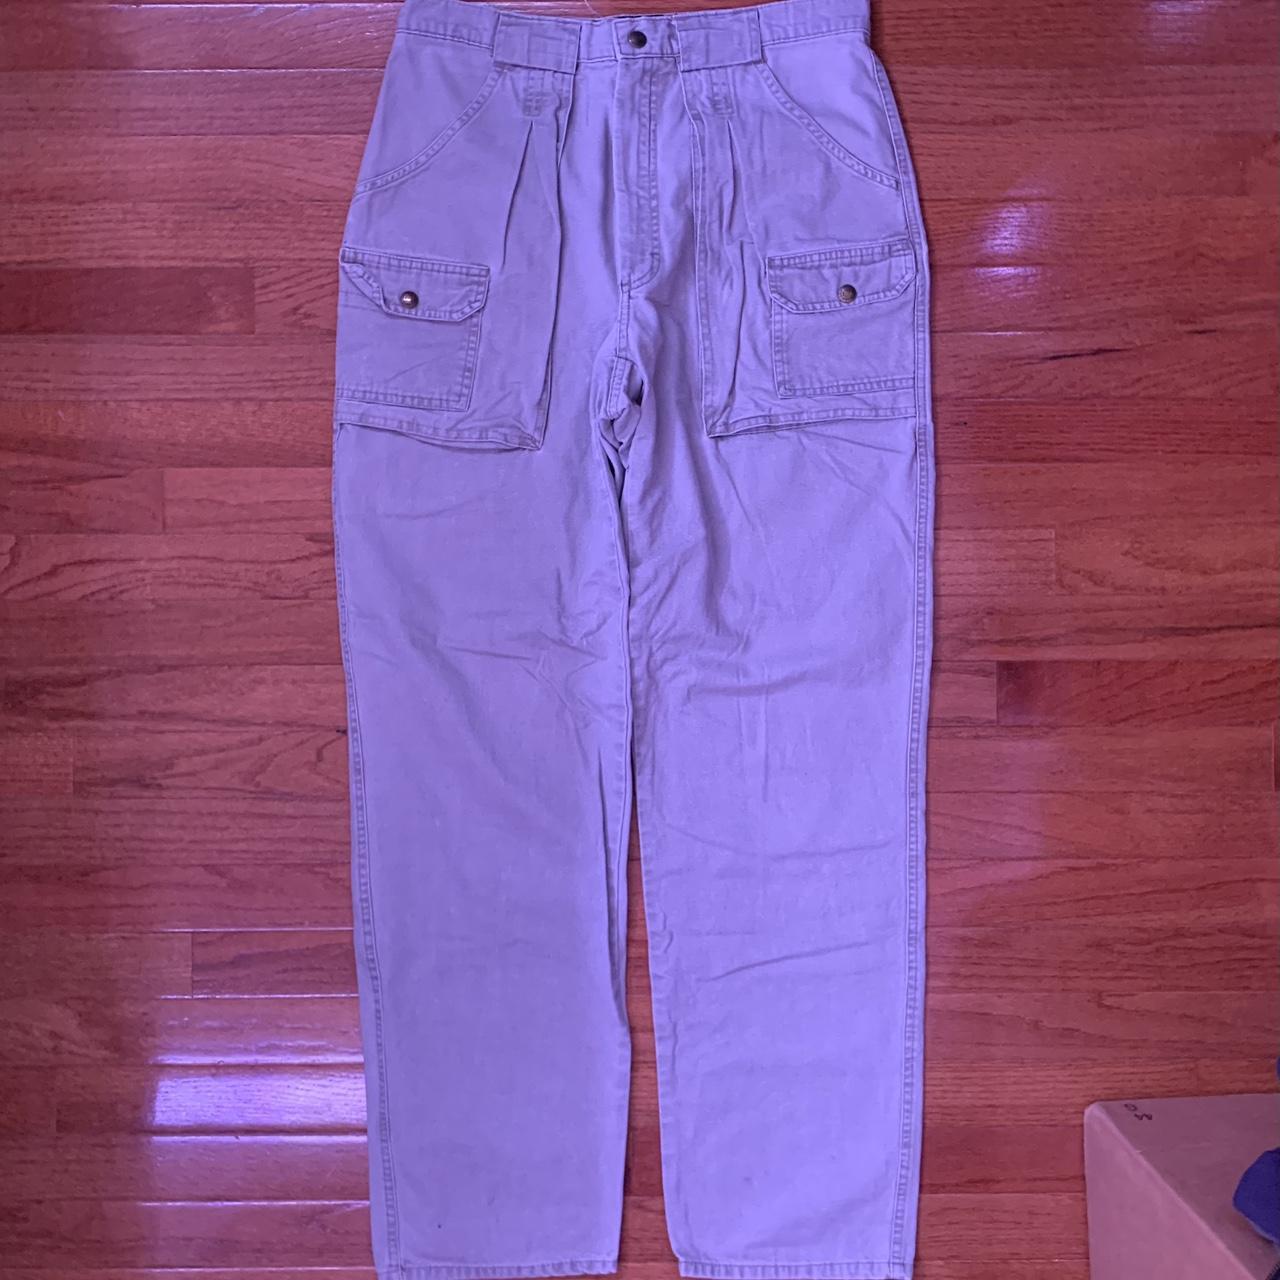 eddie bauer grey cargo pants fits size 30 waist - Depop